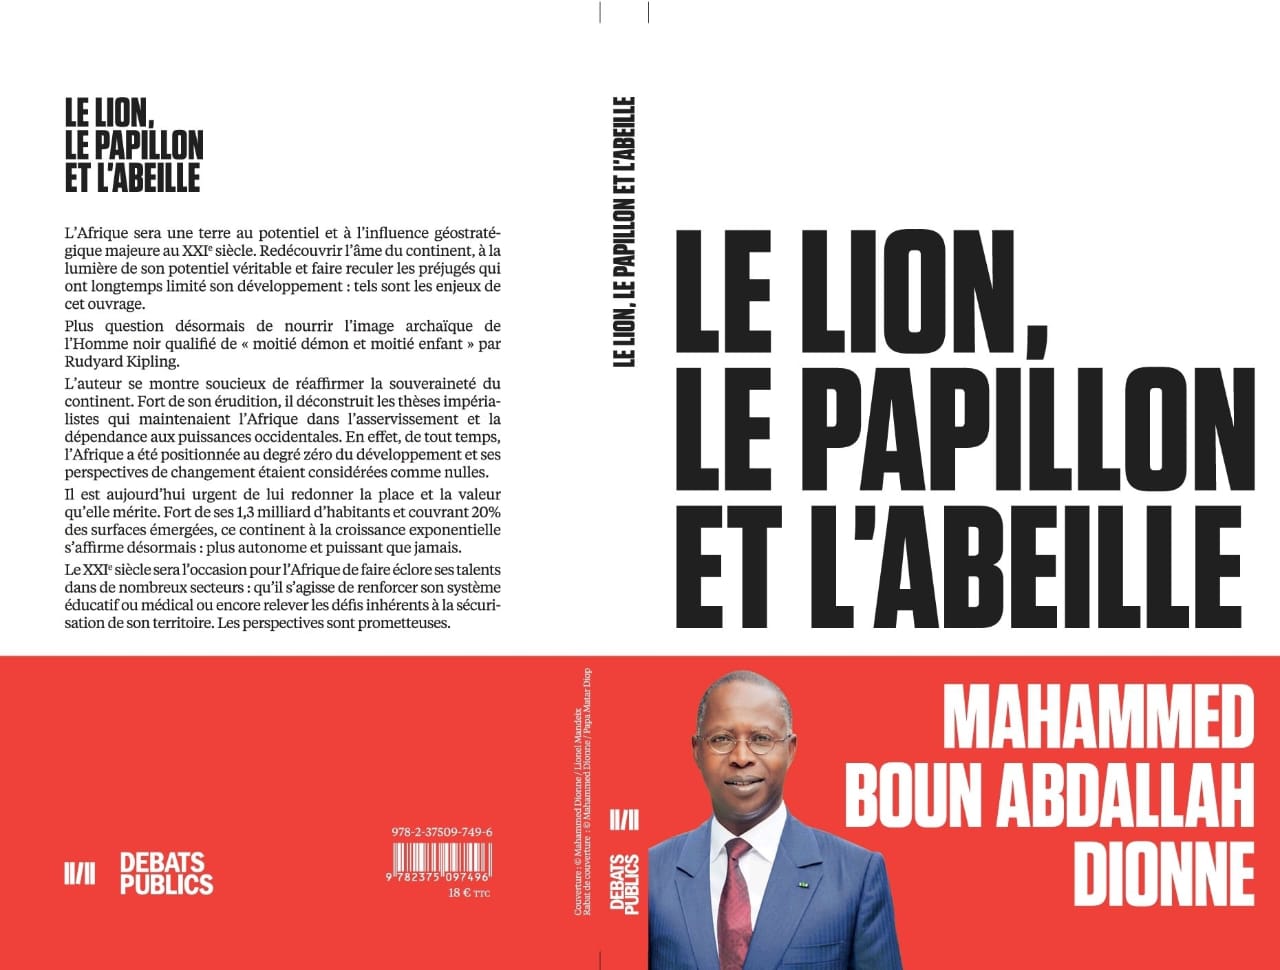 "Le Lion, le Papillon et l'Abeille : Le nouvel ouvrage de l'ancien Premier ministre Mahammed B. A. Dionne qui démonte les clichés sur l'Afrique et annonce des perspectives prometteuses.